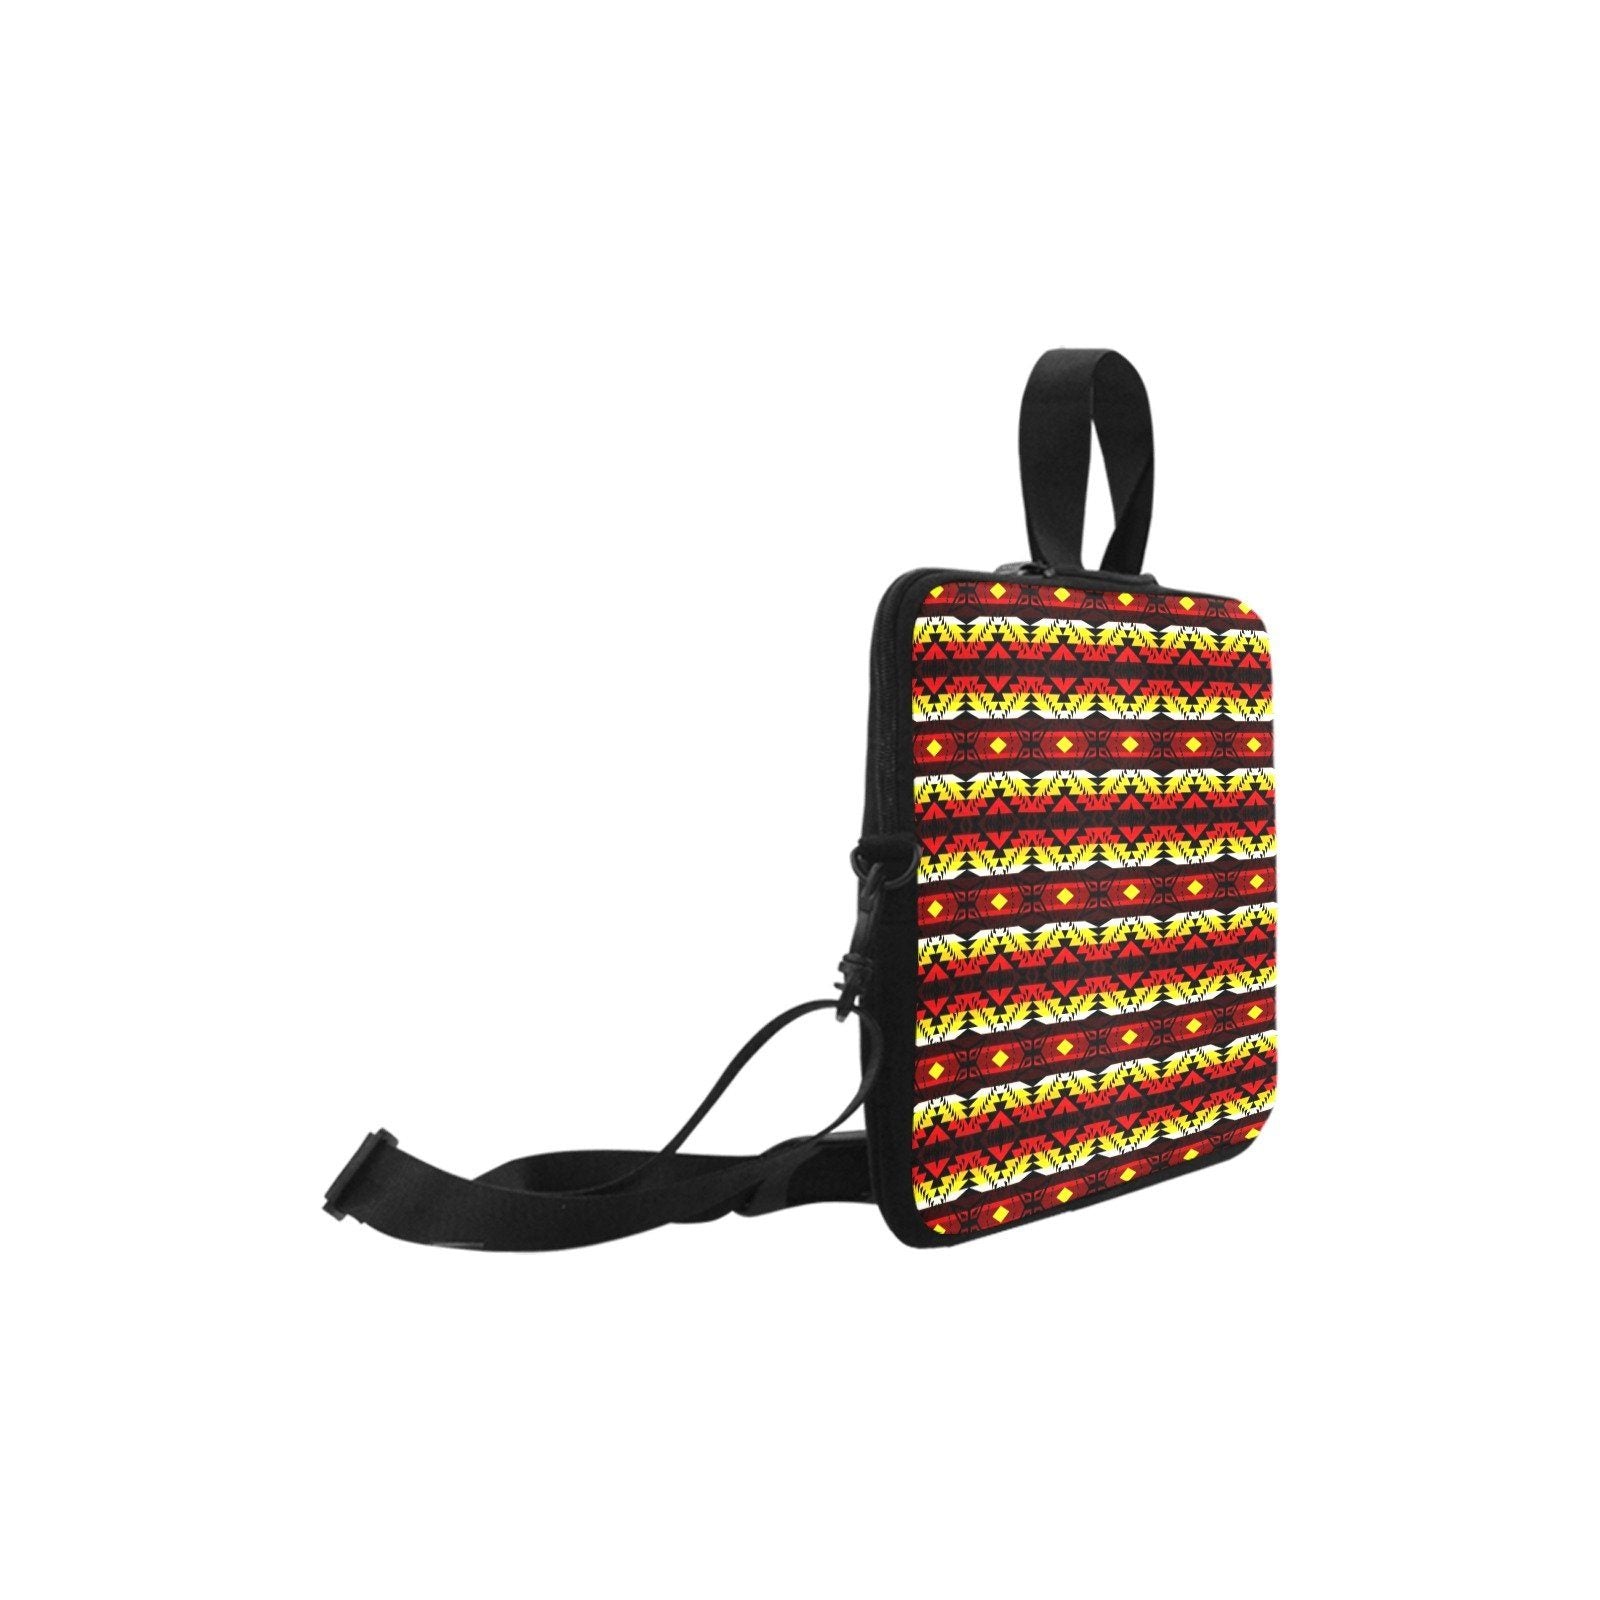 Canyon War Party Laptop Handbags 11" bag e-joyer 